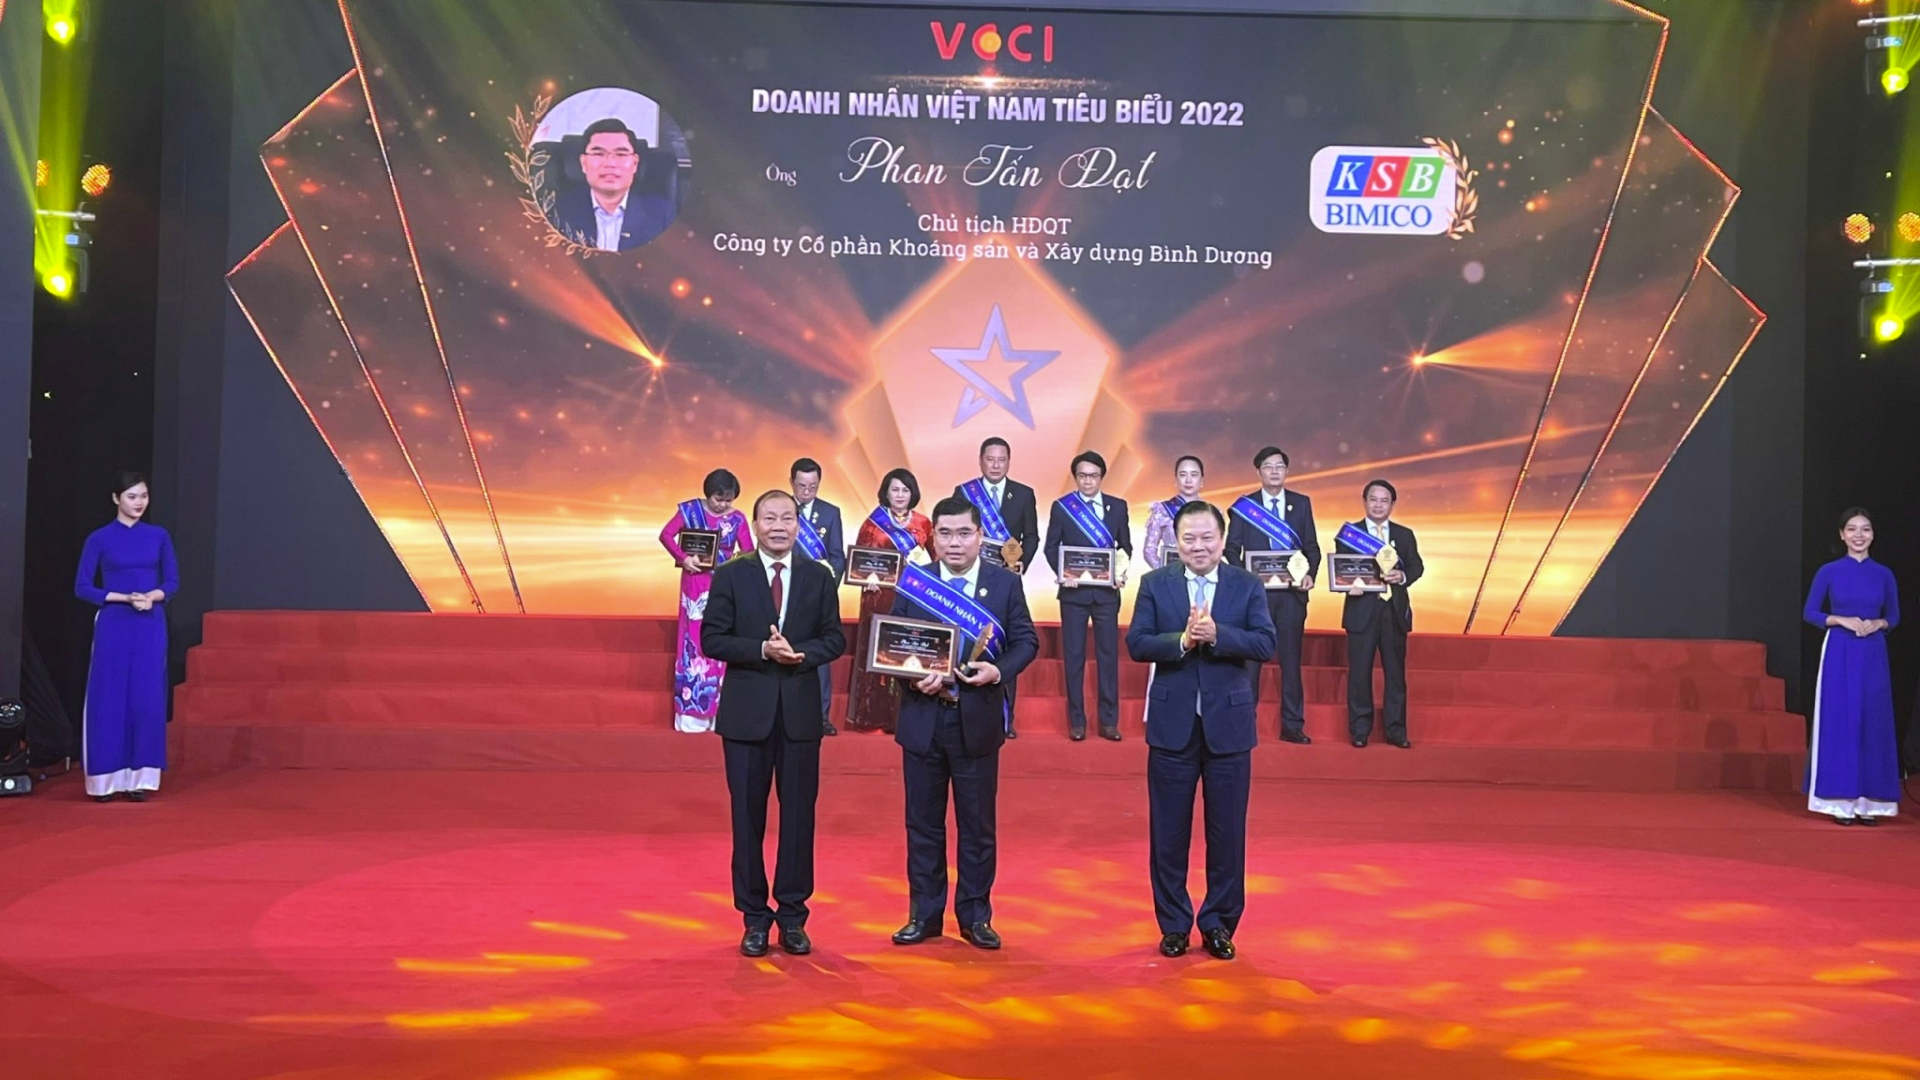 Chủ tịch KSB – Phan Tấn Đạt được tôn vinh “Doanh nhân Việt Nam tiêu biểu” năm 2022